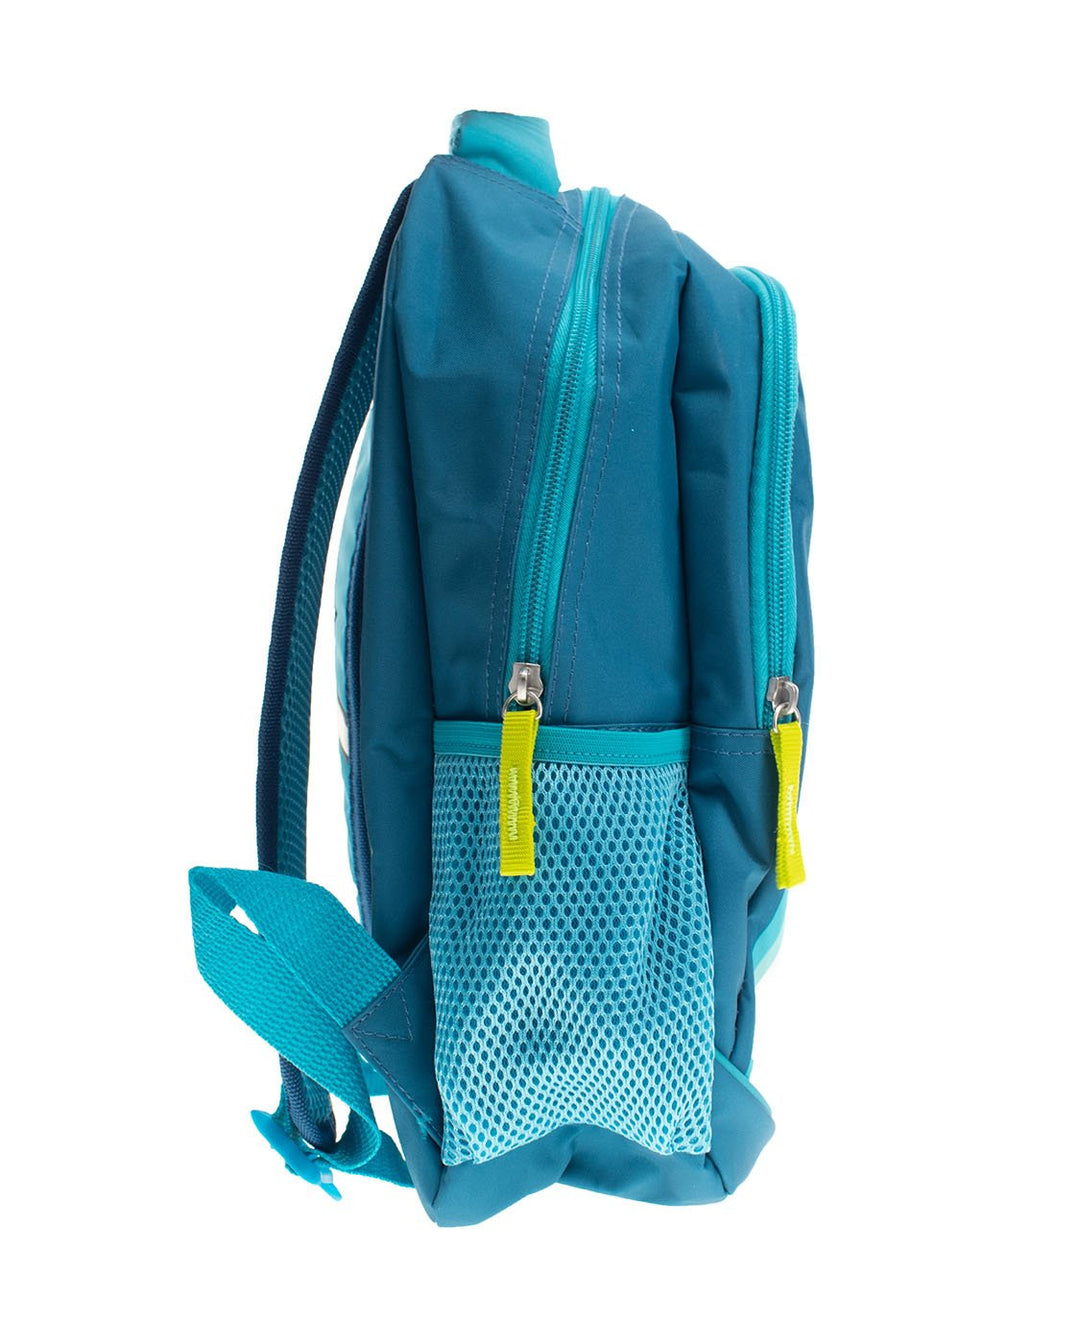 Kids Shark Mini Backpack - Blue - Western Chief